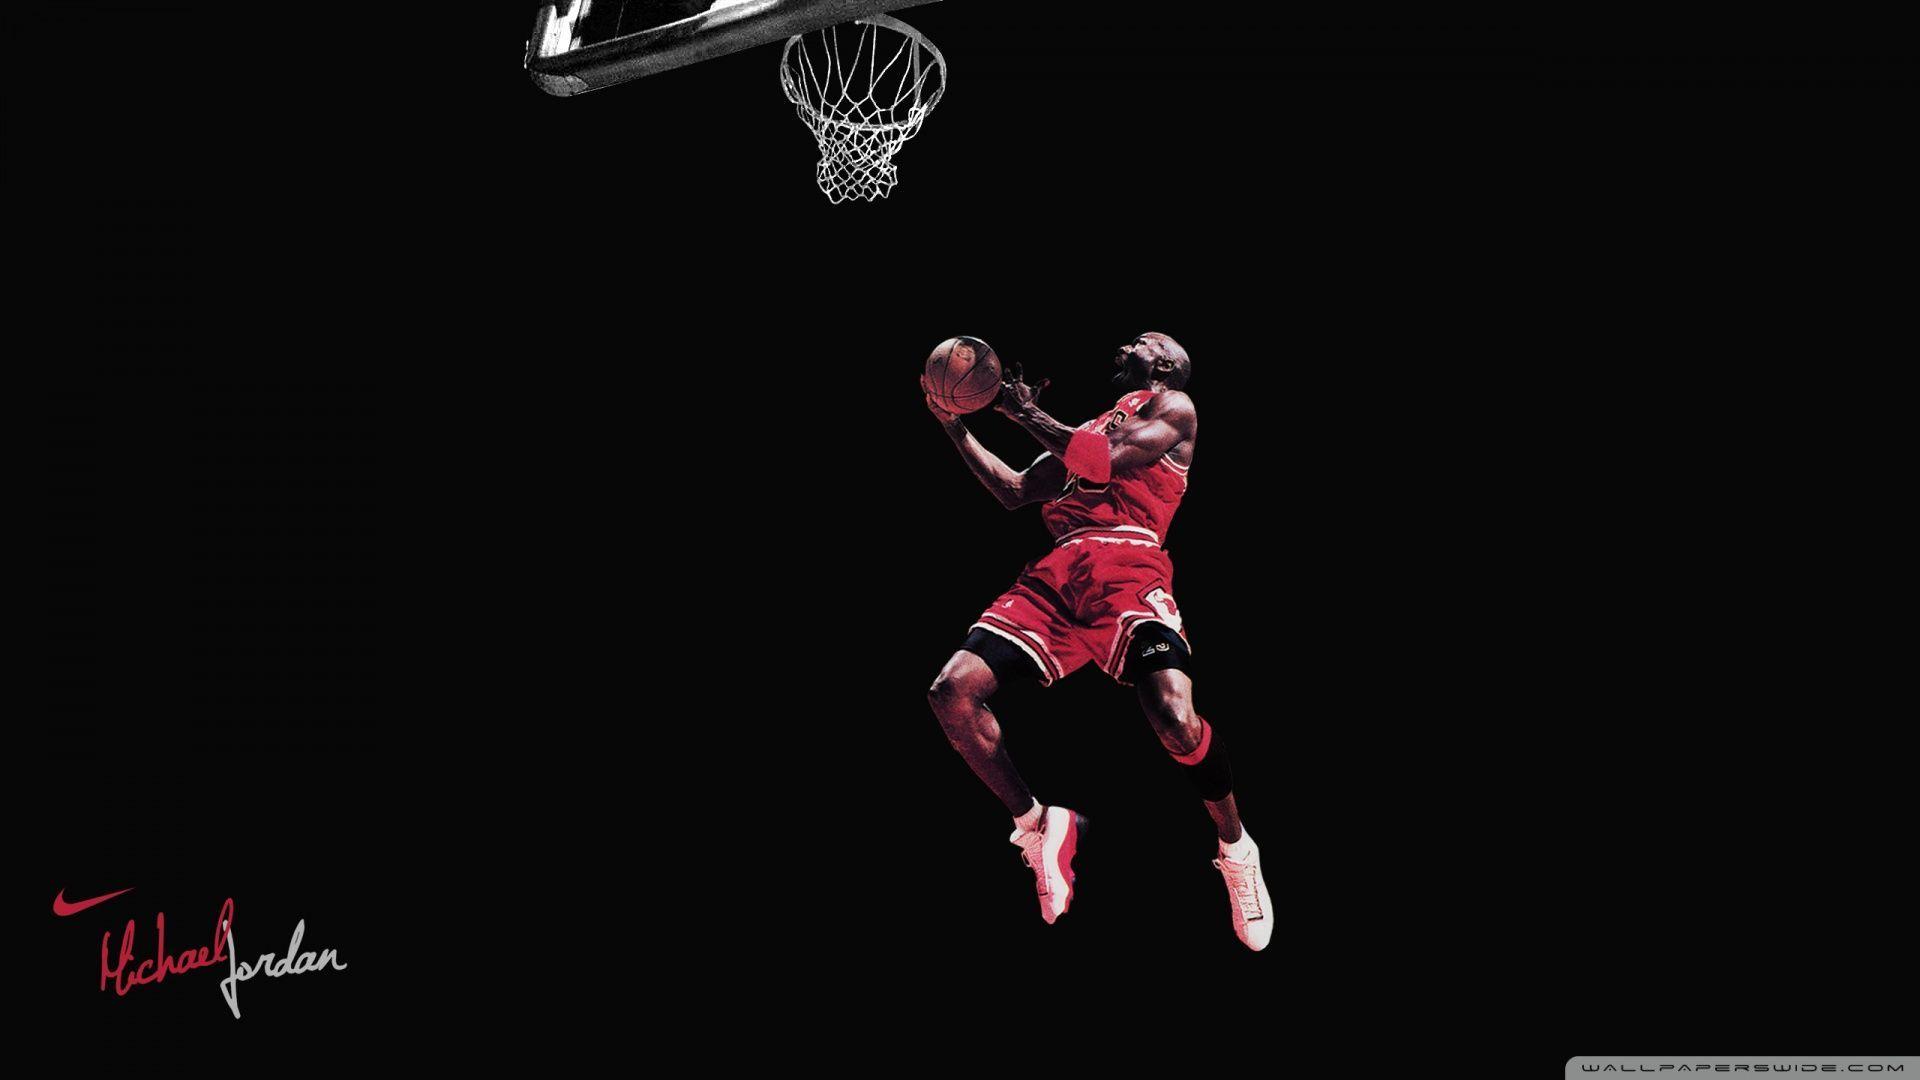 Michael Jordan Wings Wallpapers 1920x1080